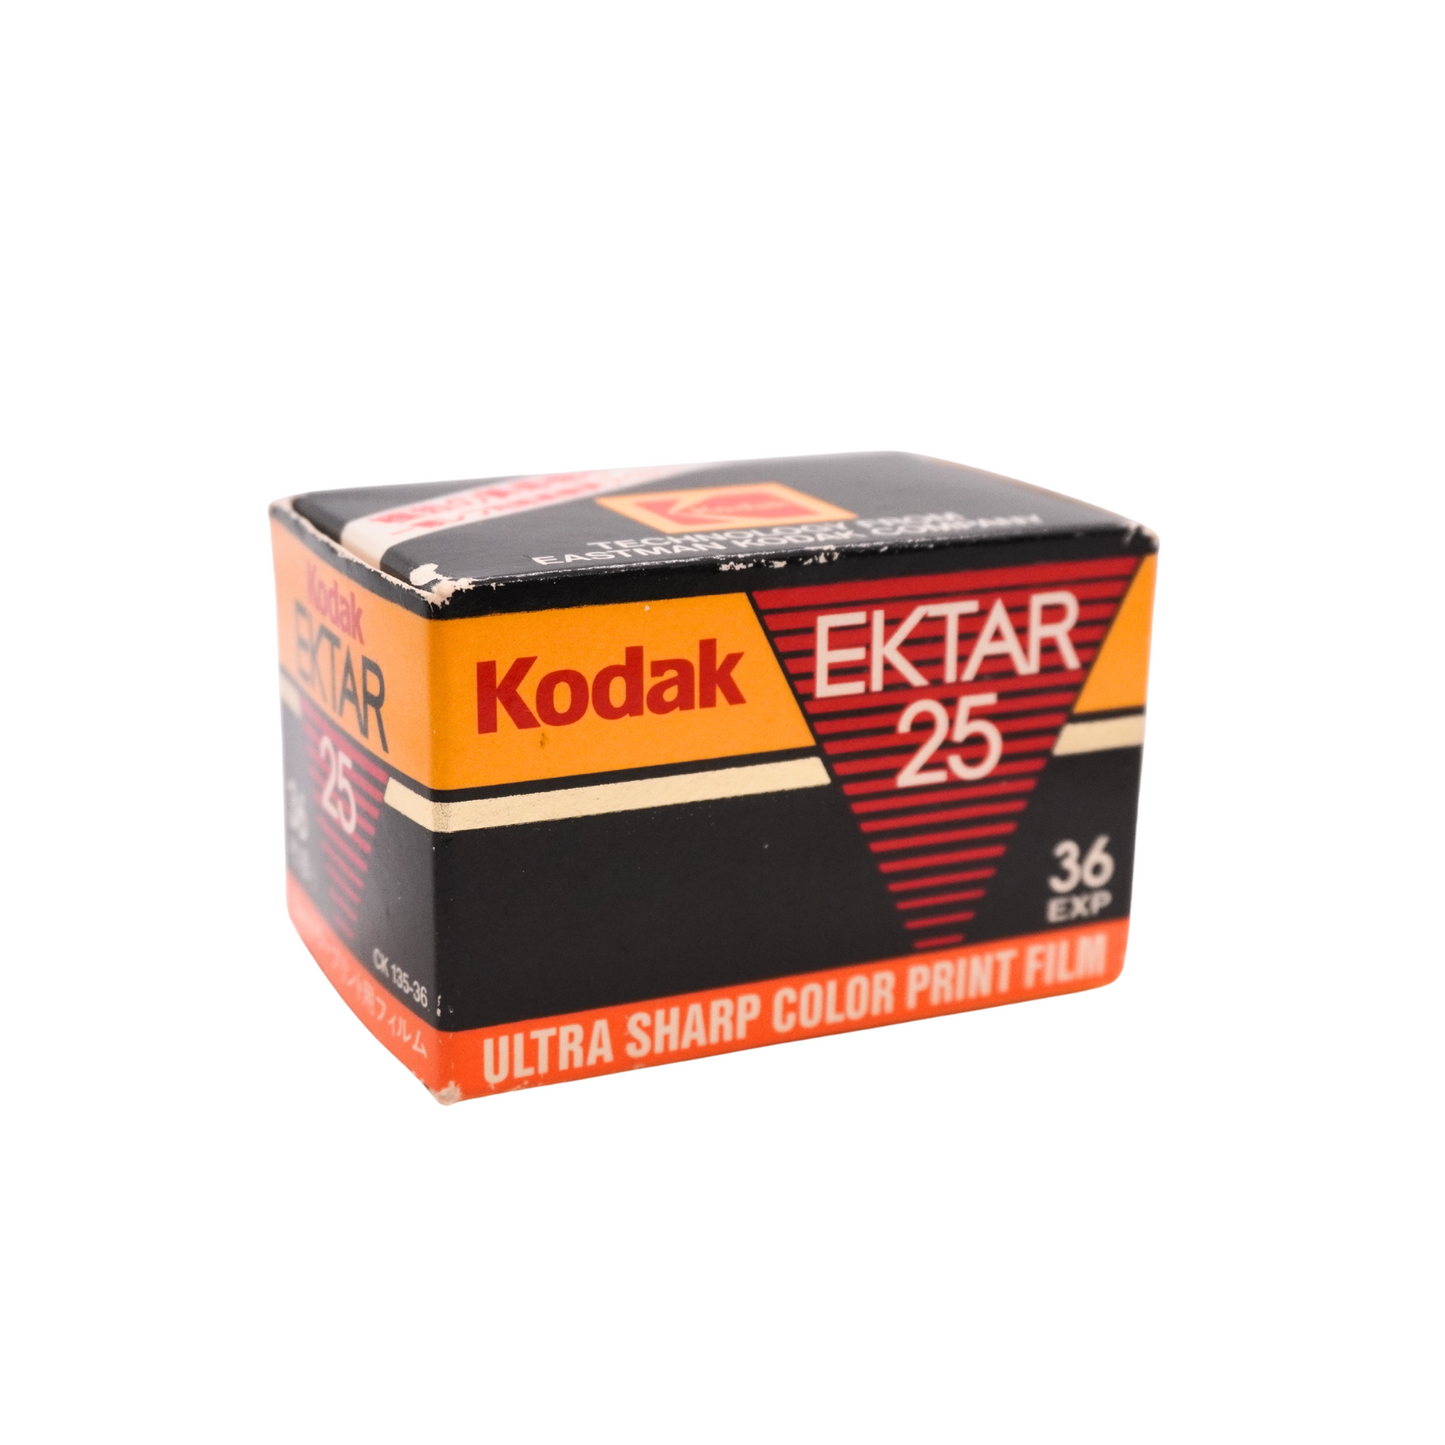 Kodak Ektar 25 Color Expired Film 36exp (1993/08)